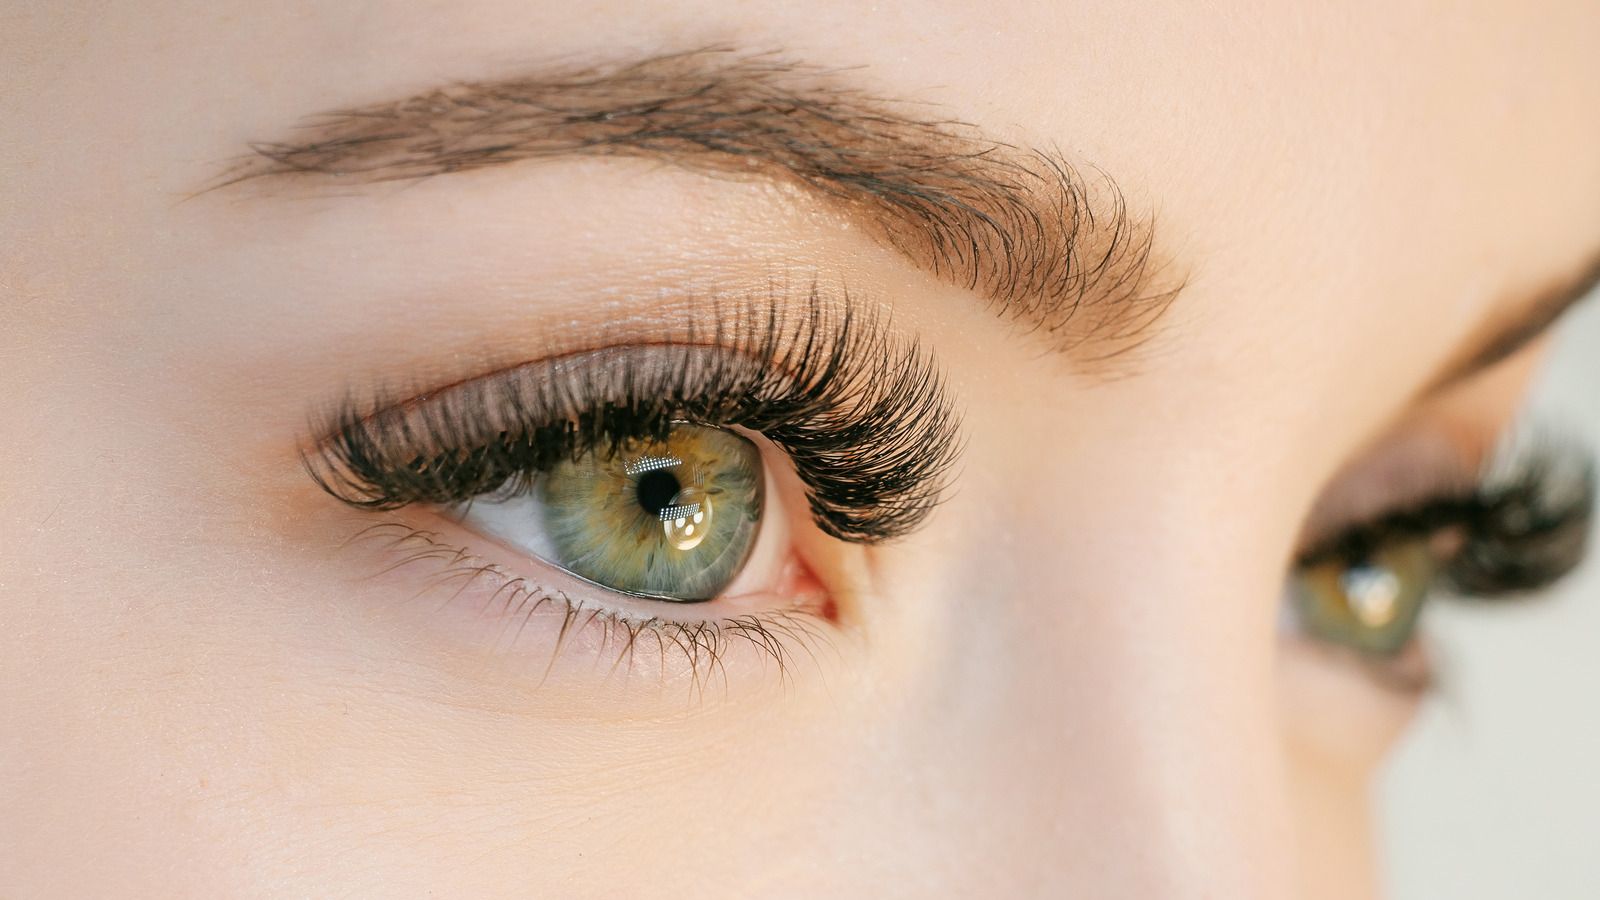 De ce persoanele cu ochii verzi sunt mai speciale? 10 lucruri fascinante despre ochii verzi și cum influențează personalitatea